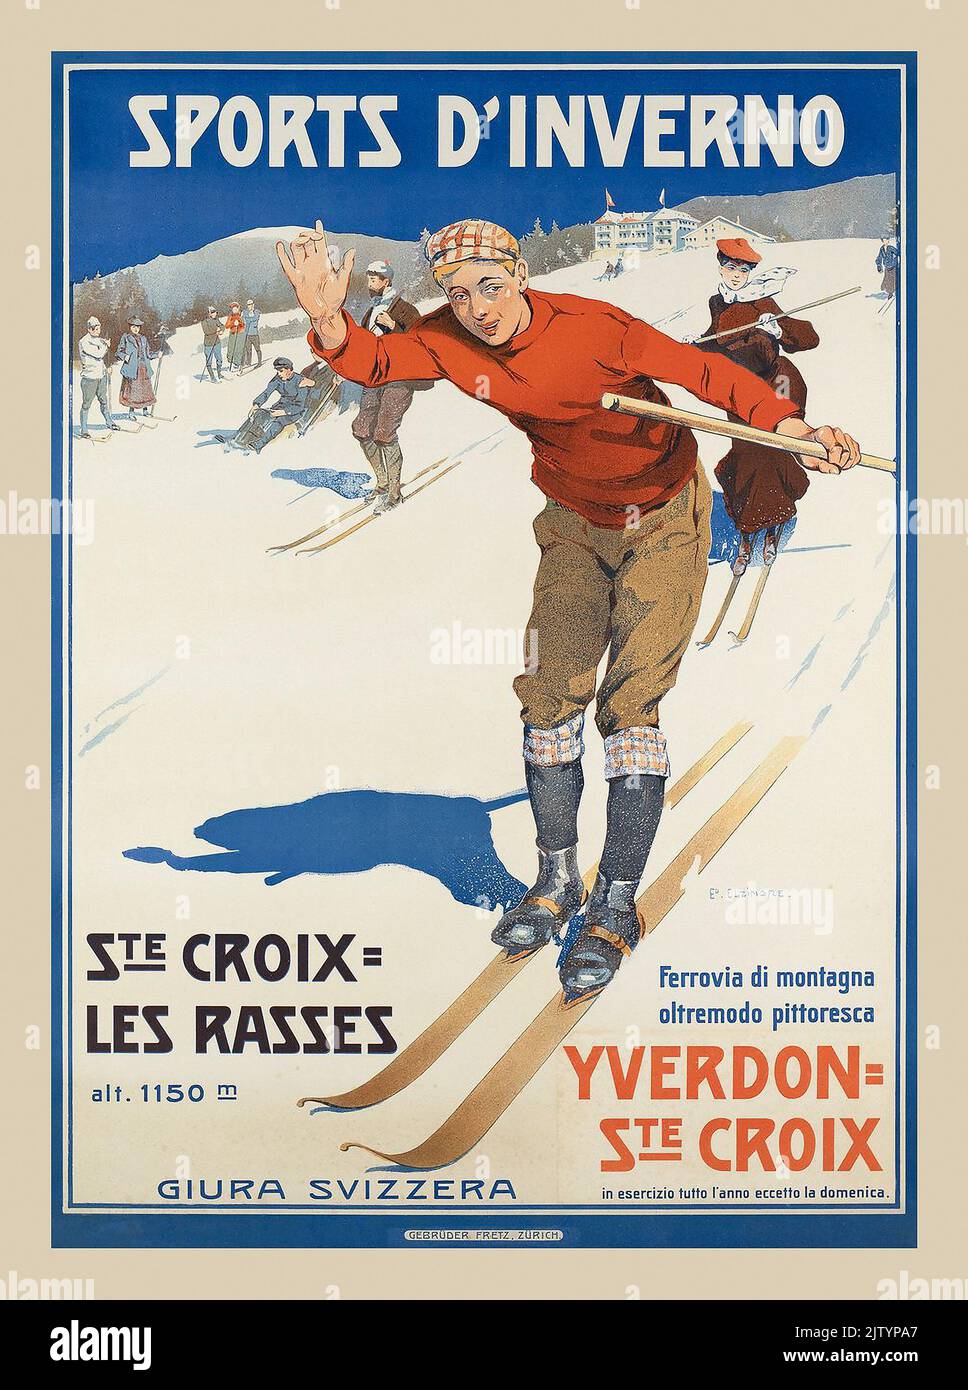 Vintage Ski Poster 1900s Travel Sport Style Fashion Sports d'Inverno, Ste Croix Les Rasses, Yverdon - Ste Croix von Edouard Elzingre 1905 Stockfoto